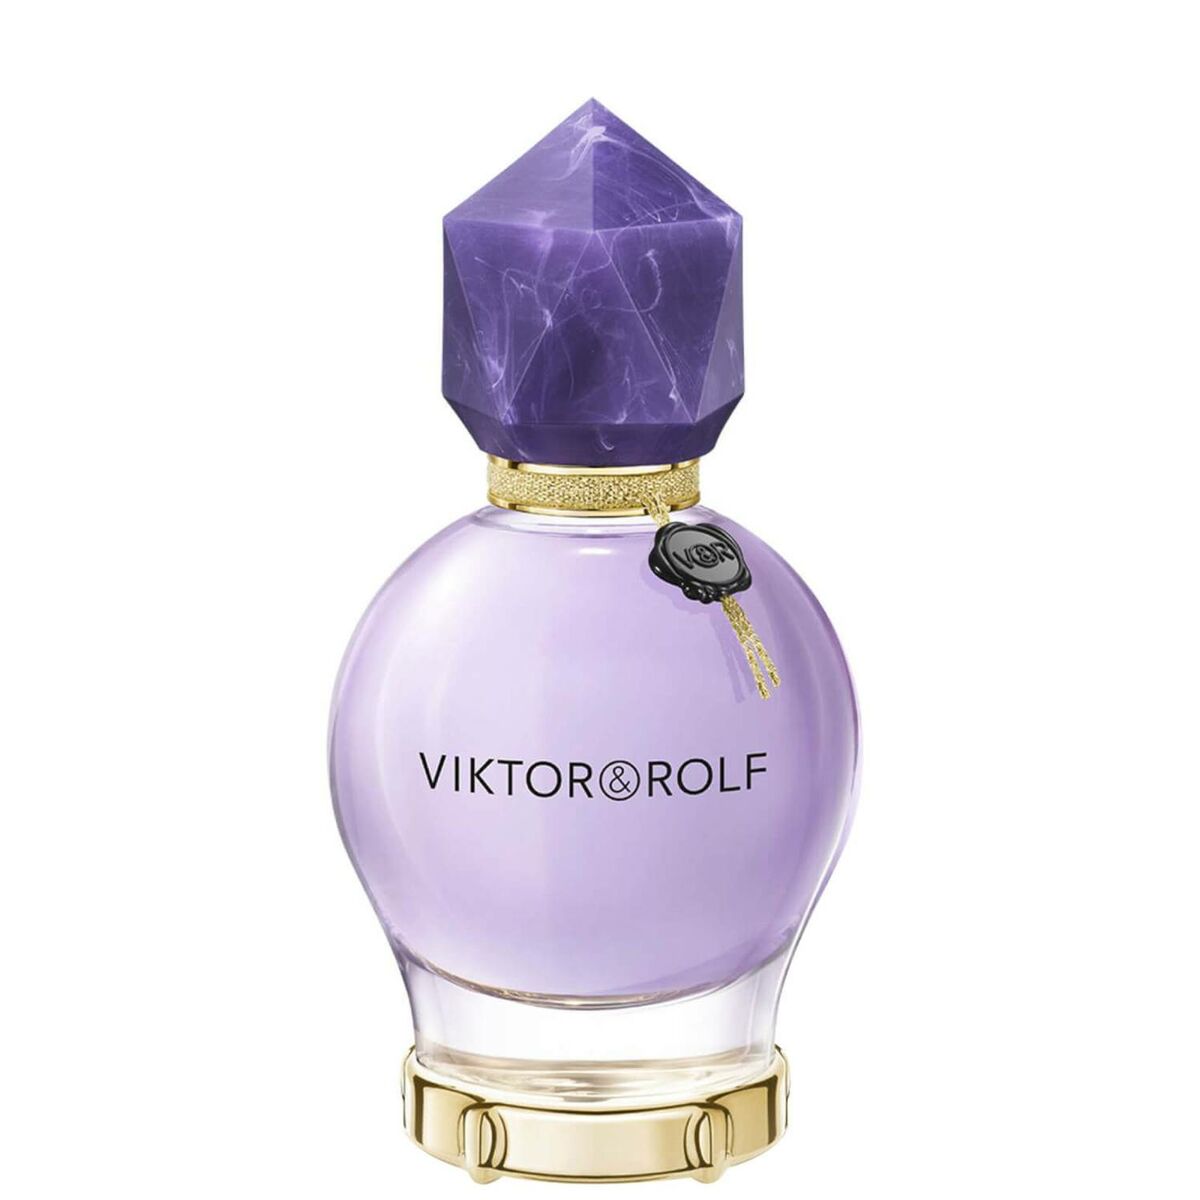 Kvinnors parfym Viktor & Rolf lycka till 50 ml